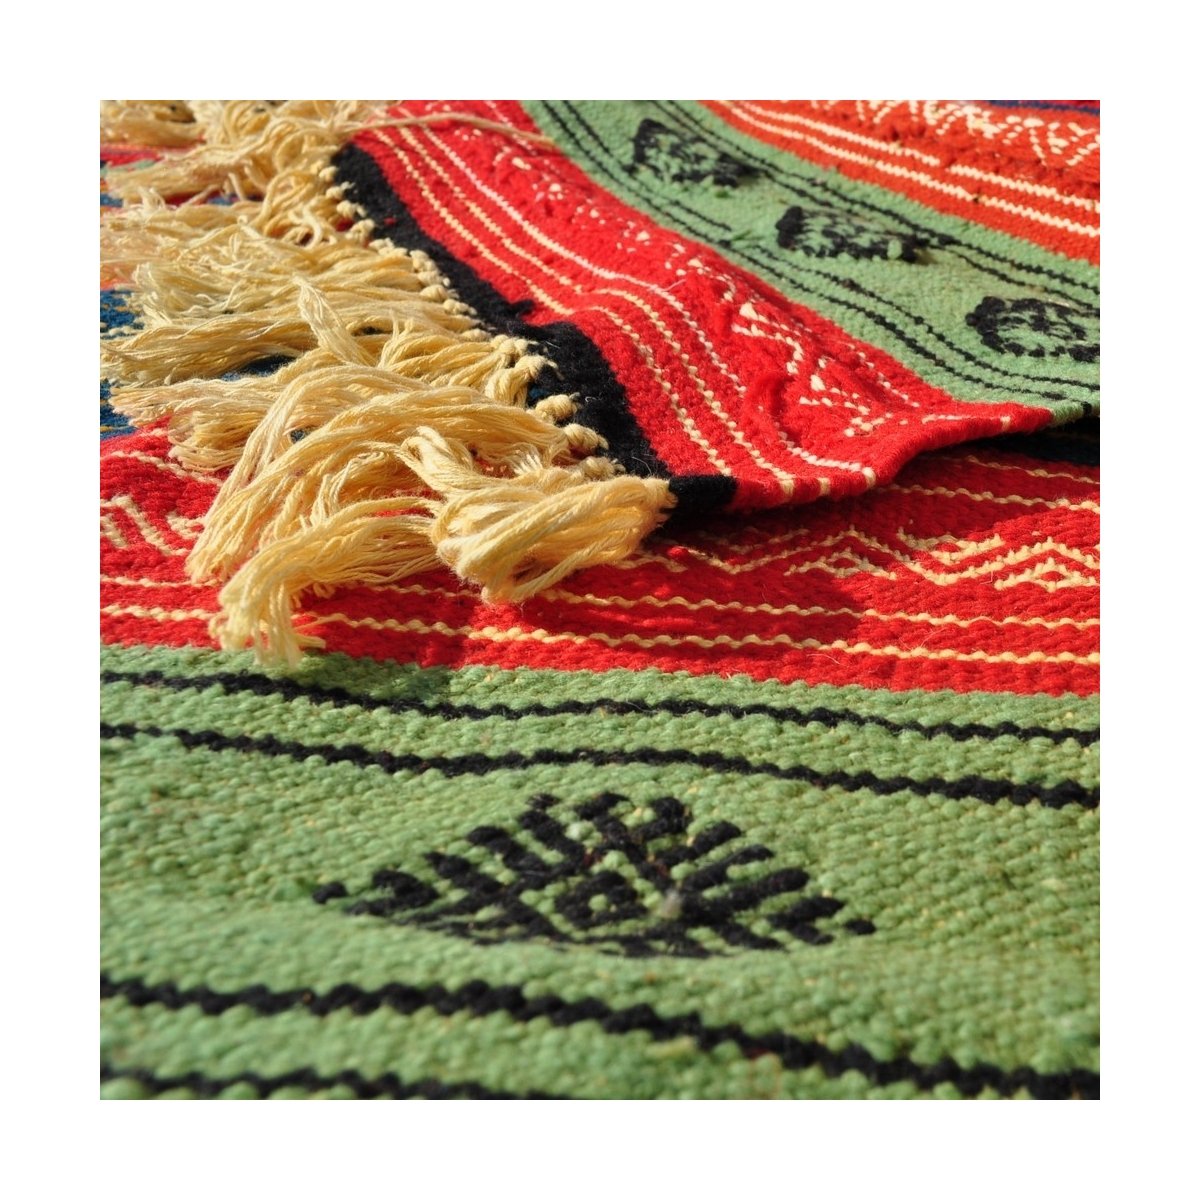 Tapete berbere Tapete Kilim Babjdid 140x250 Amarelo/Multicor (Tecidos à mão, Lã) Tapete tunisiano kilim, estilo marroquino. Tape